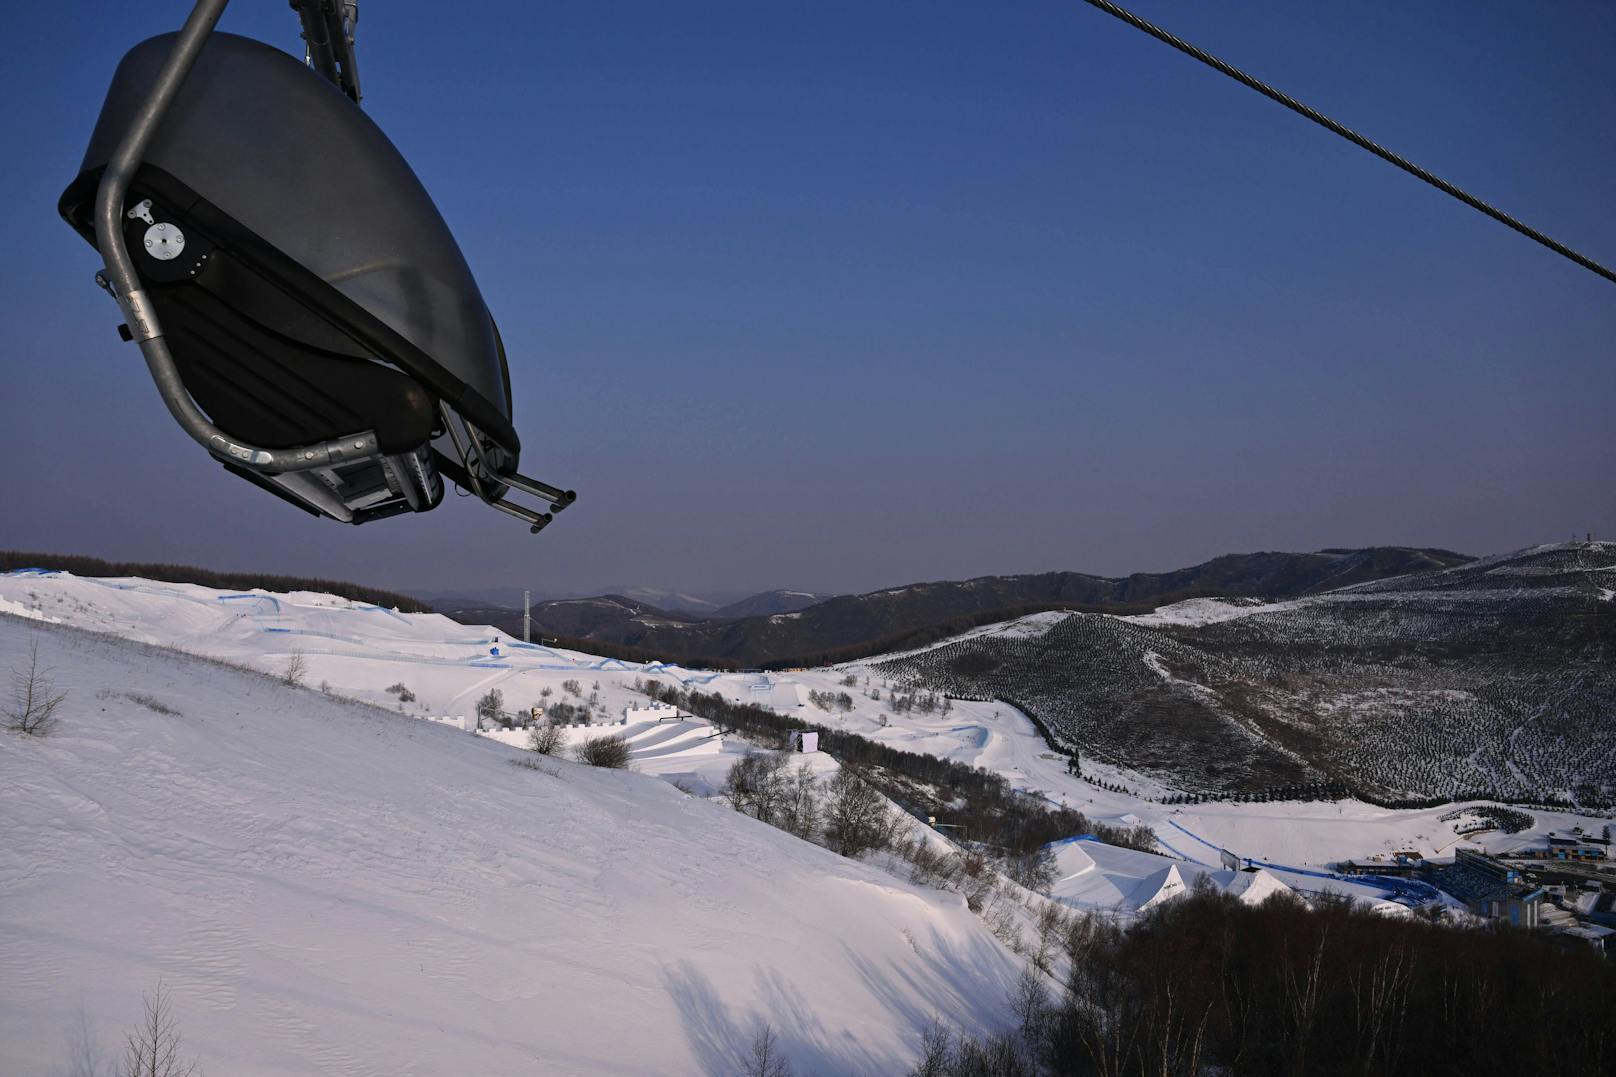 Der Blick vom Lift der Snowboard-Cross-Strecke aus.